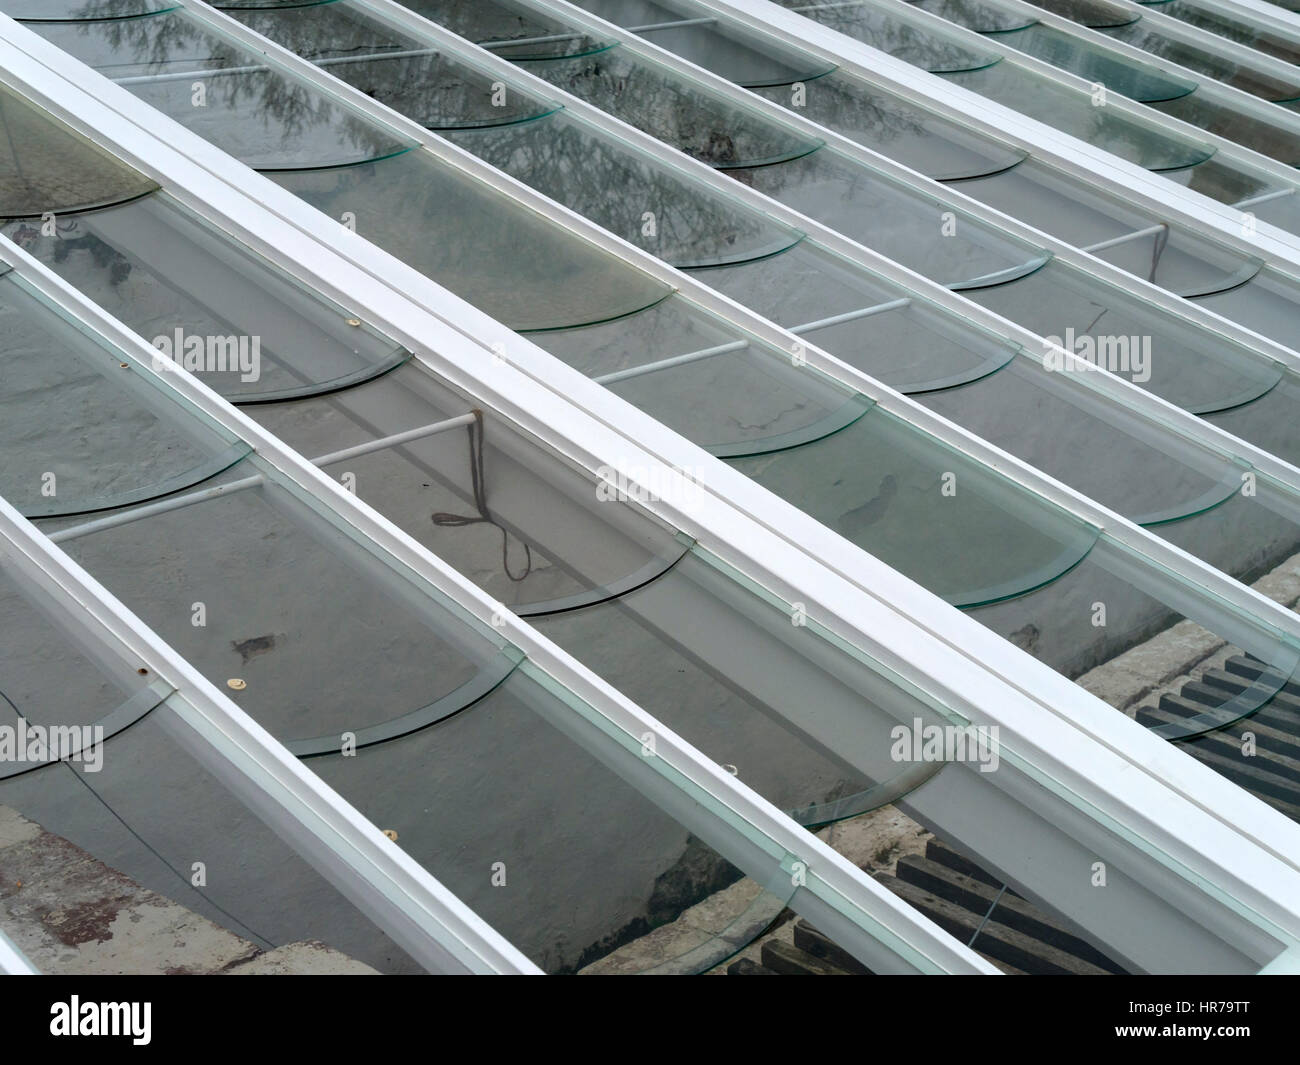 Châssis froid ou en serre avec toit en verre spécialement taillé des vitres qui ont les bords incurvés qui dirigent l'eau de pluie loin de chevrons en bois Banque D'Images